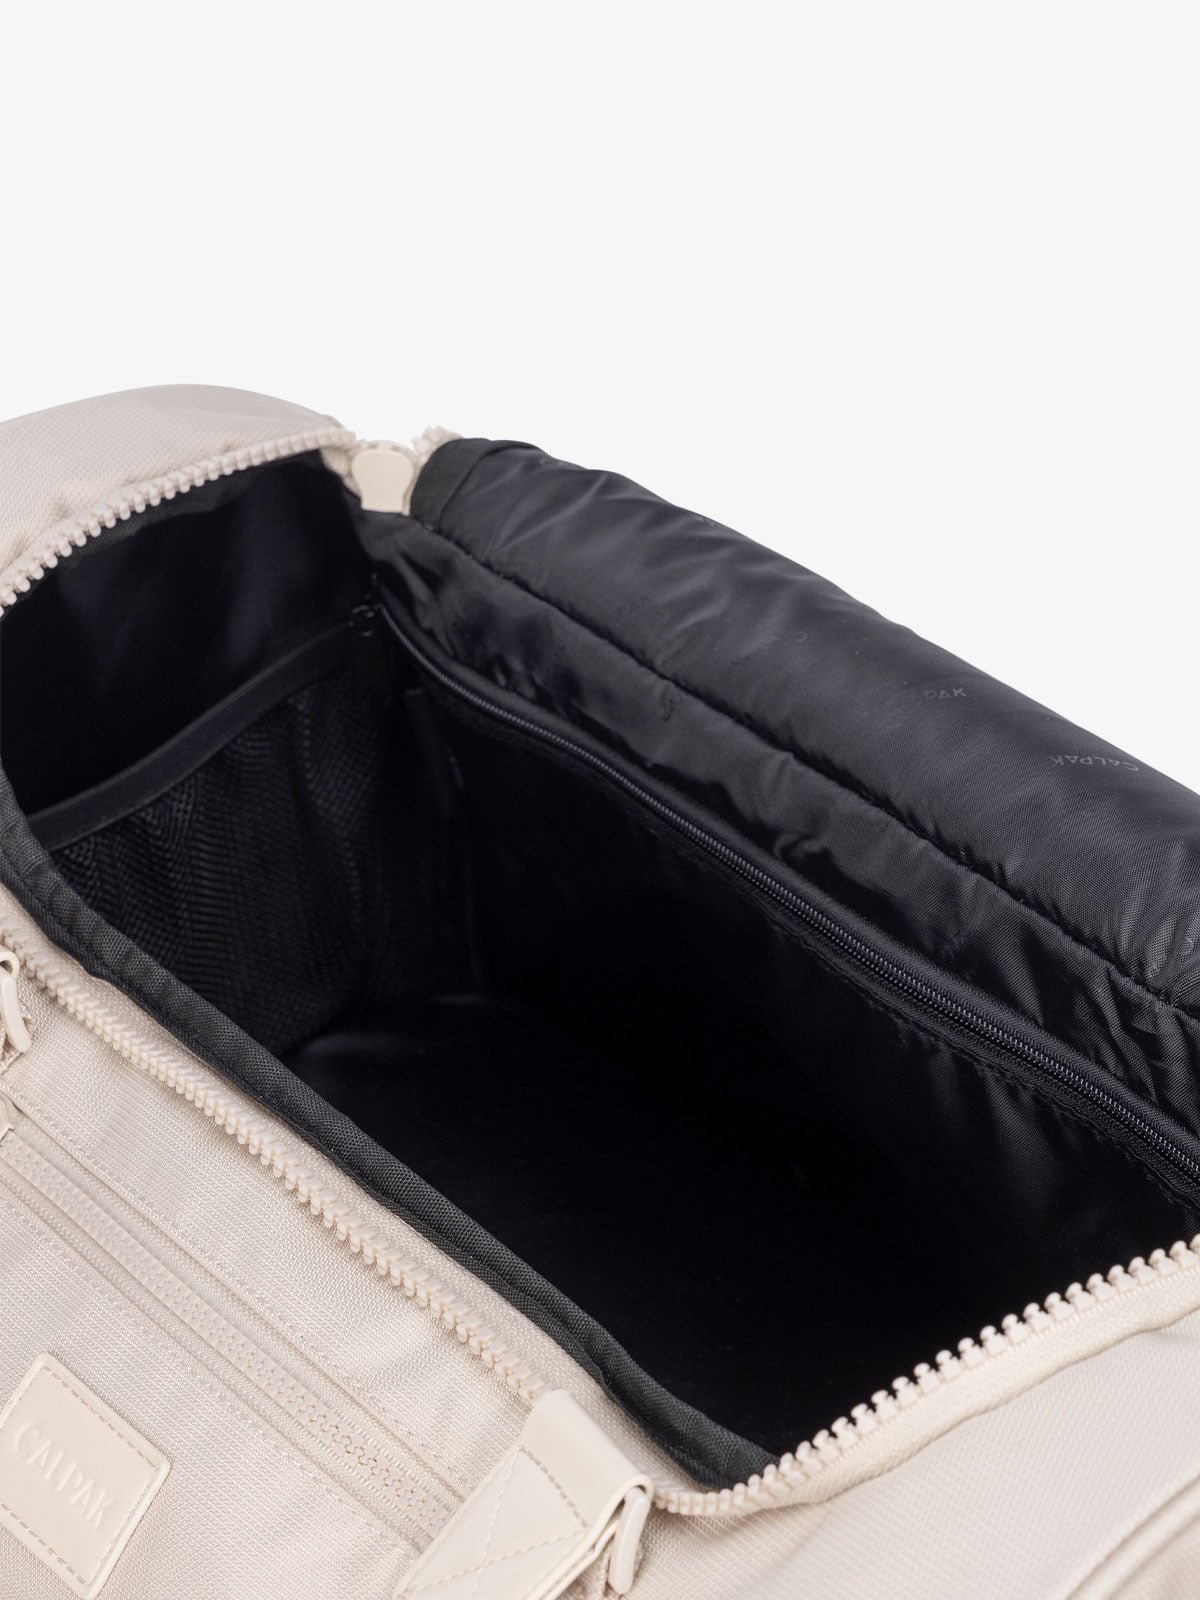 interior of cream dune CALPAK Stevyn duffel bag